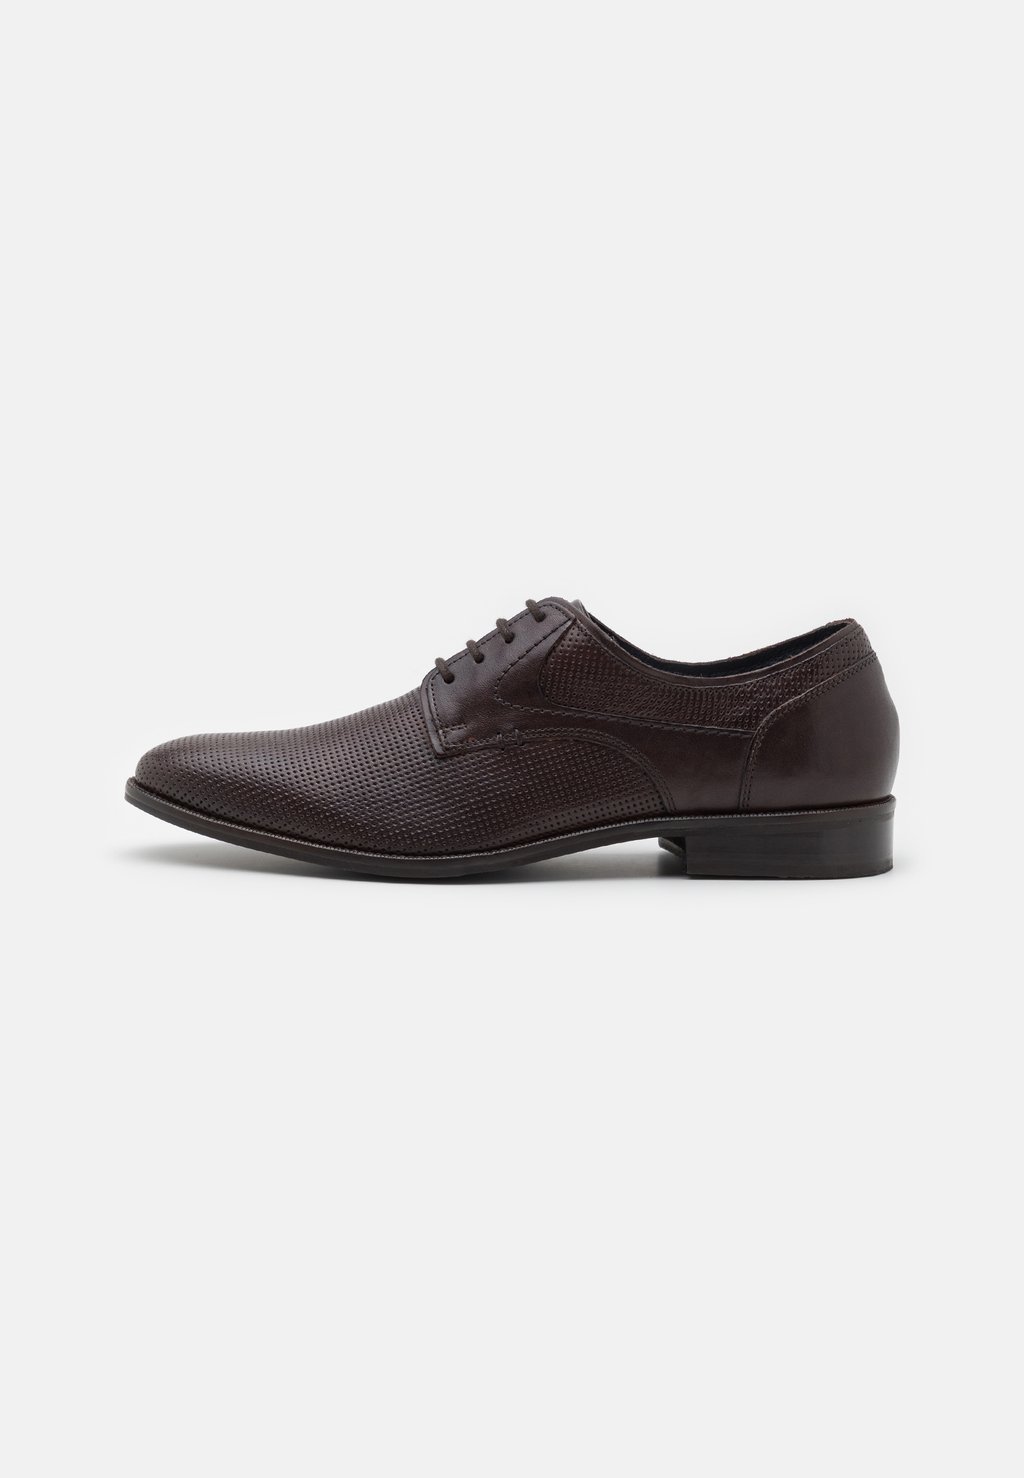 Элегантные туфли на шнуровке Leather Pier One, коричневый